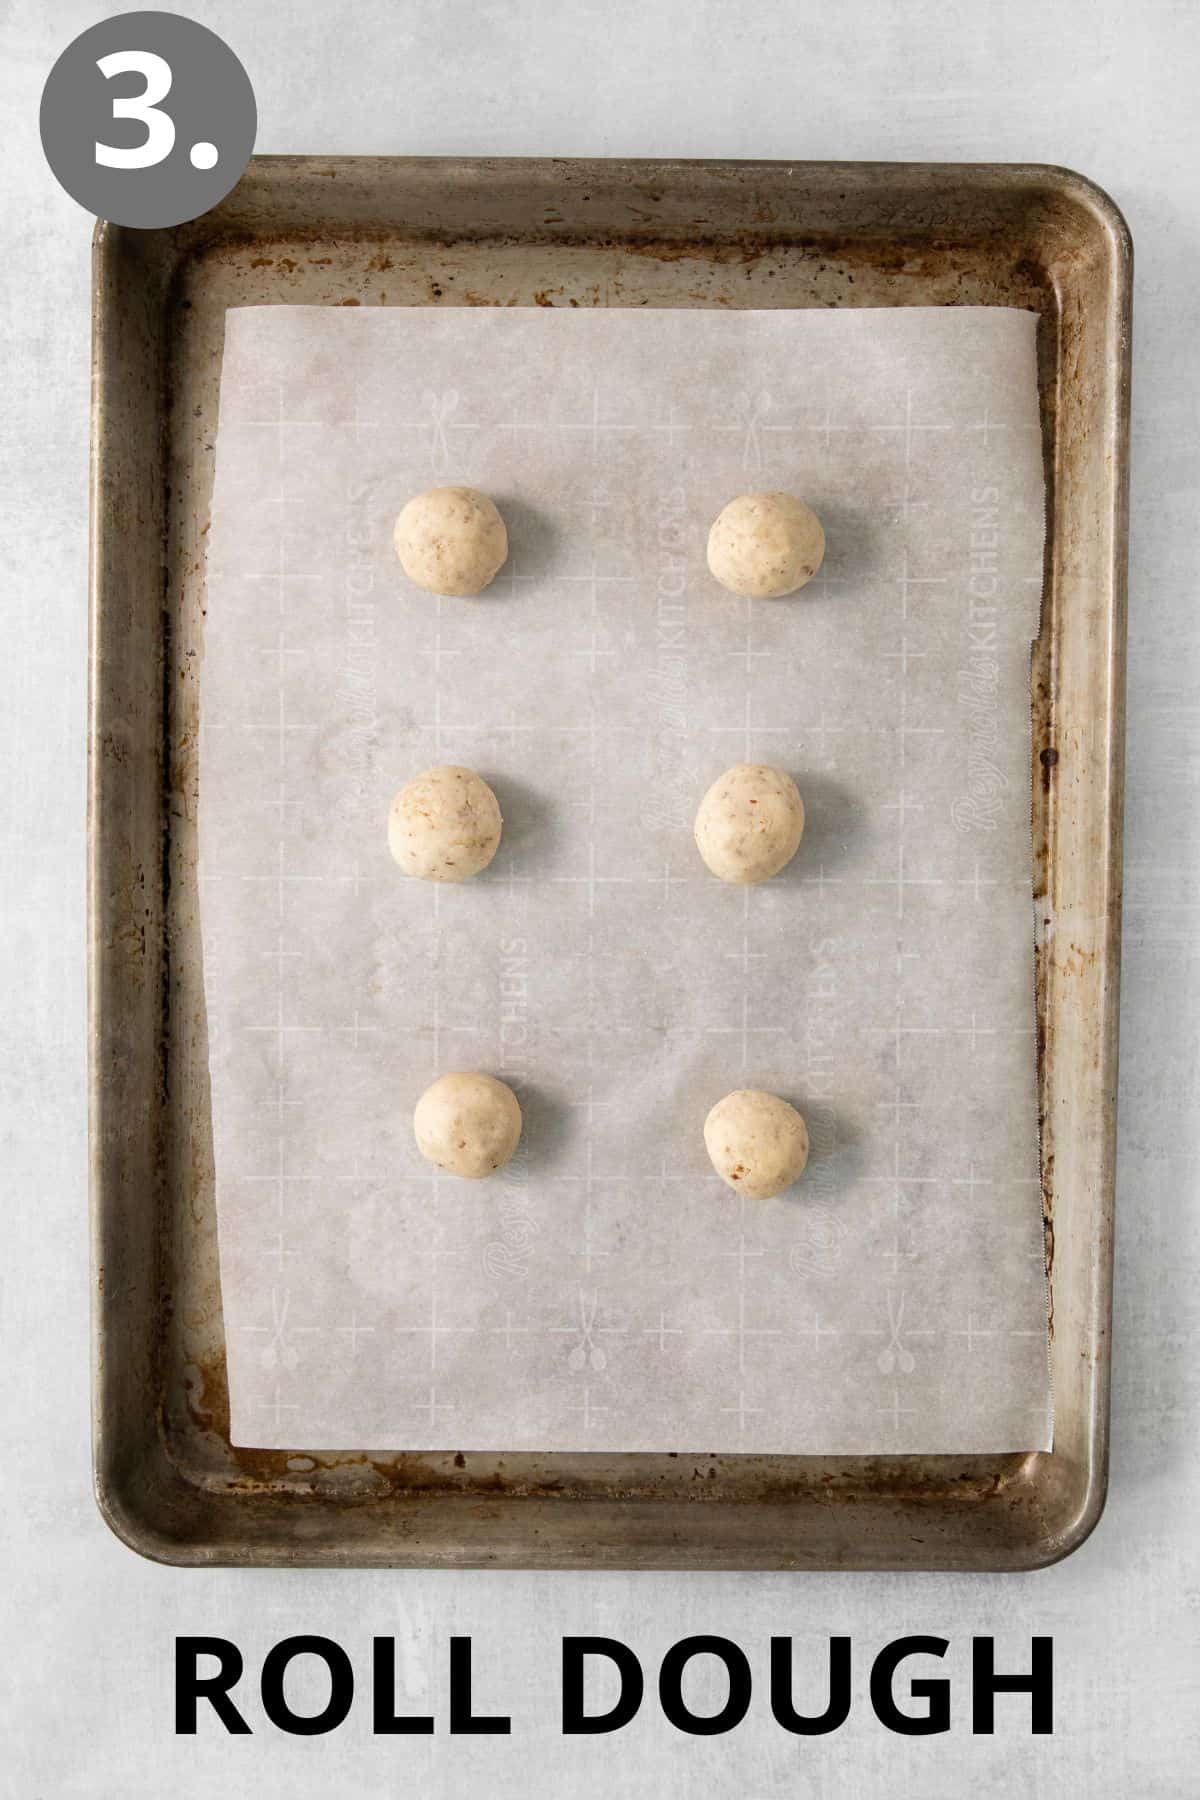 gluten-free snowball cookies dough on a baking sheet